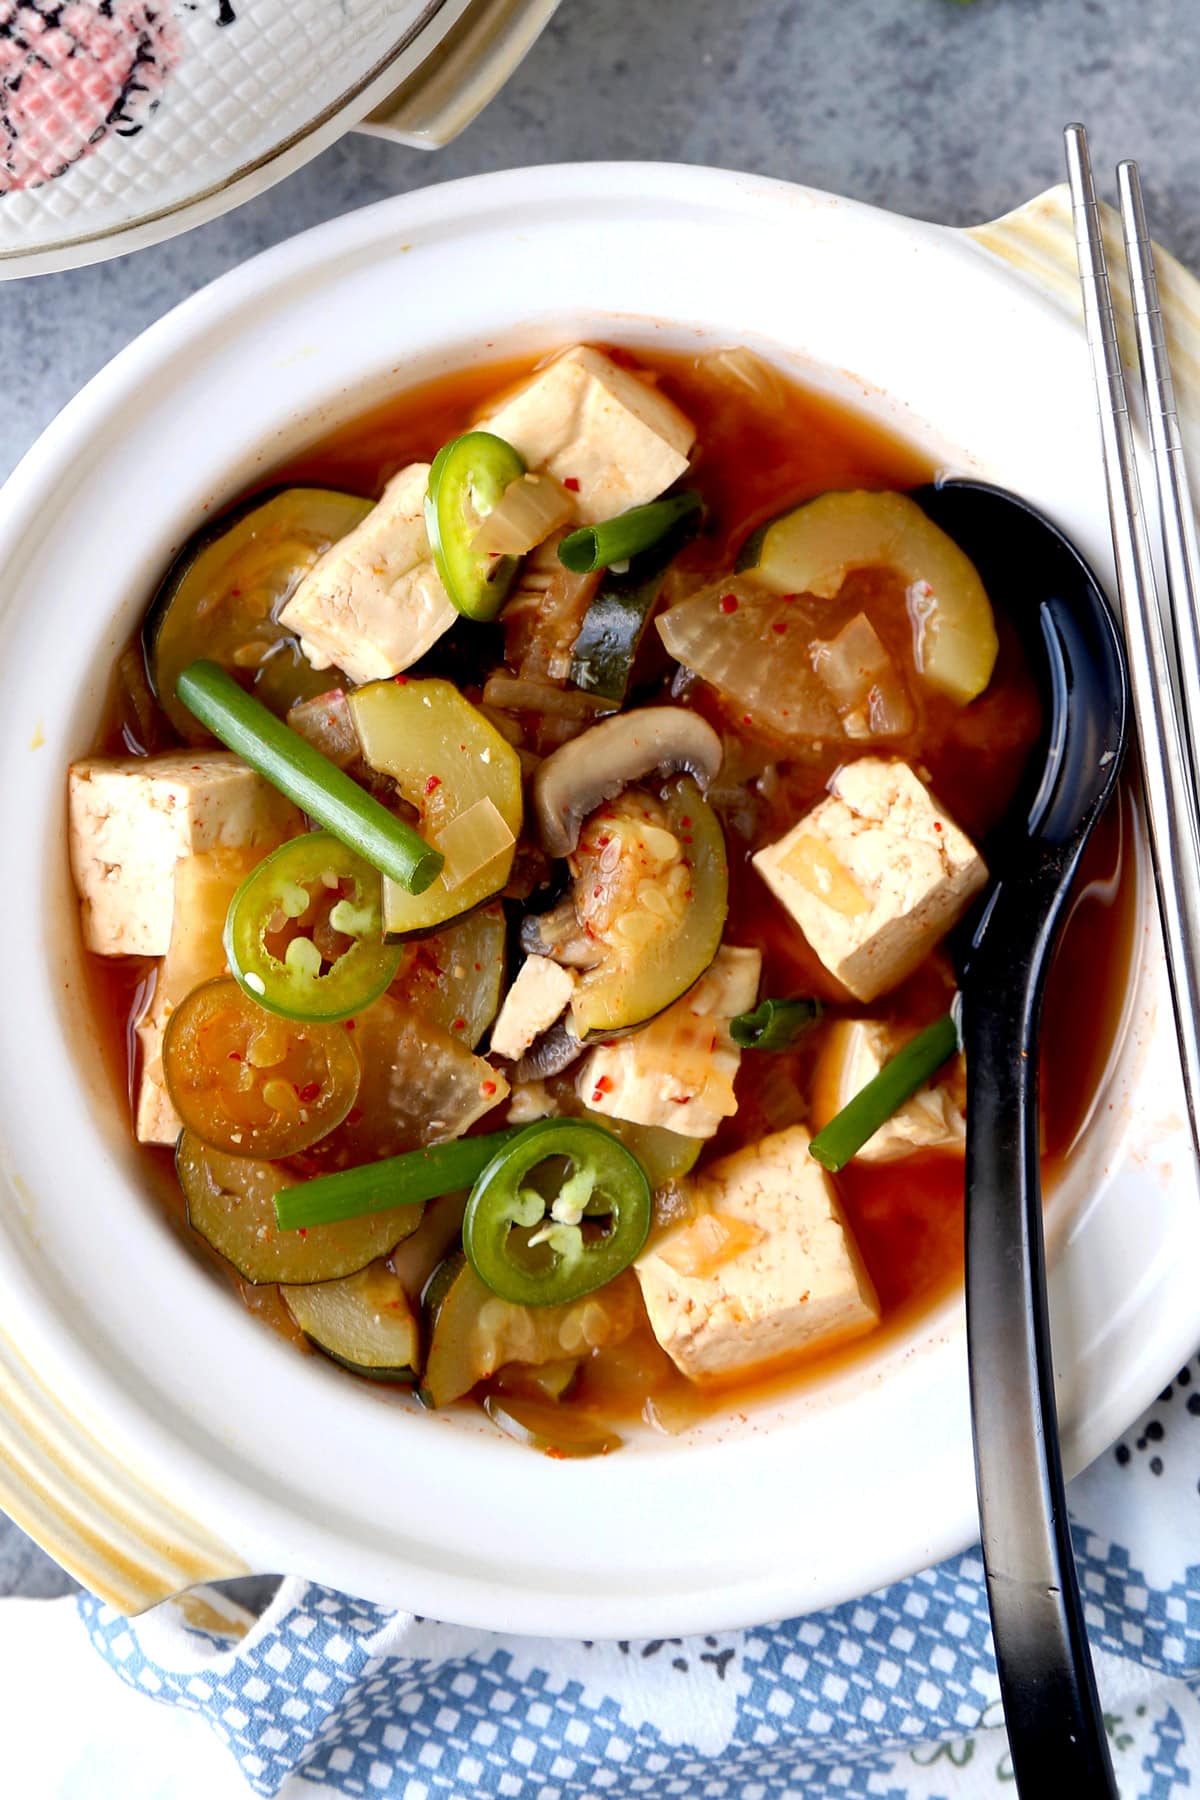 doenjang jjigae (Korean spicy stew)